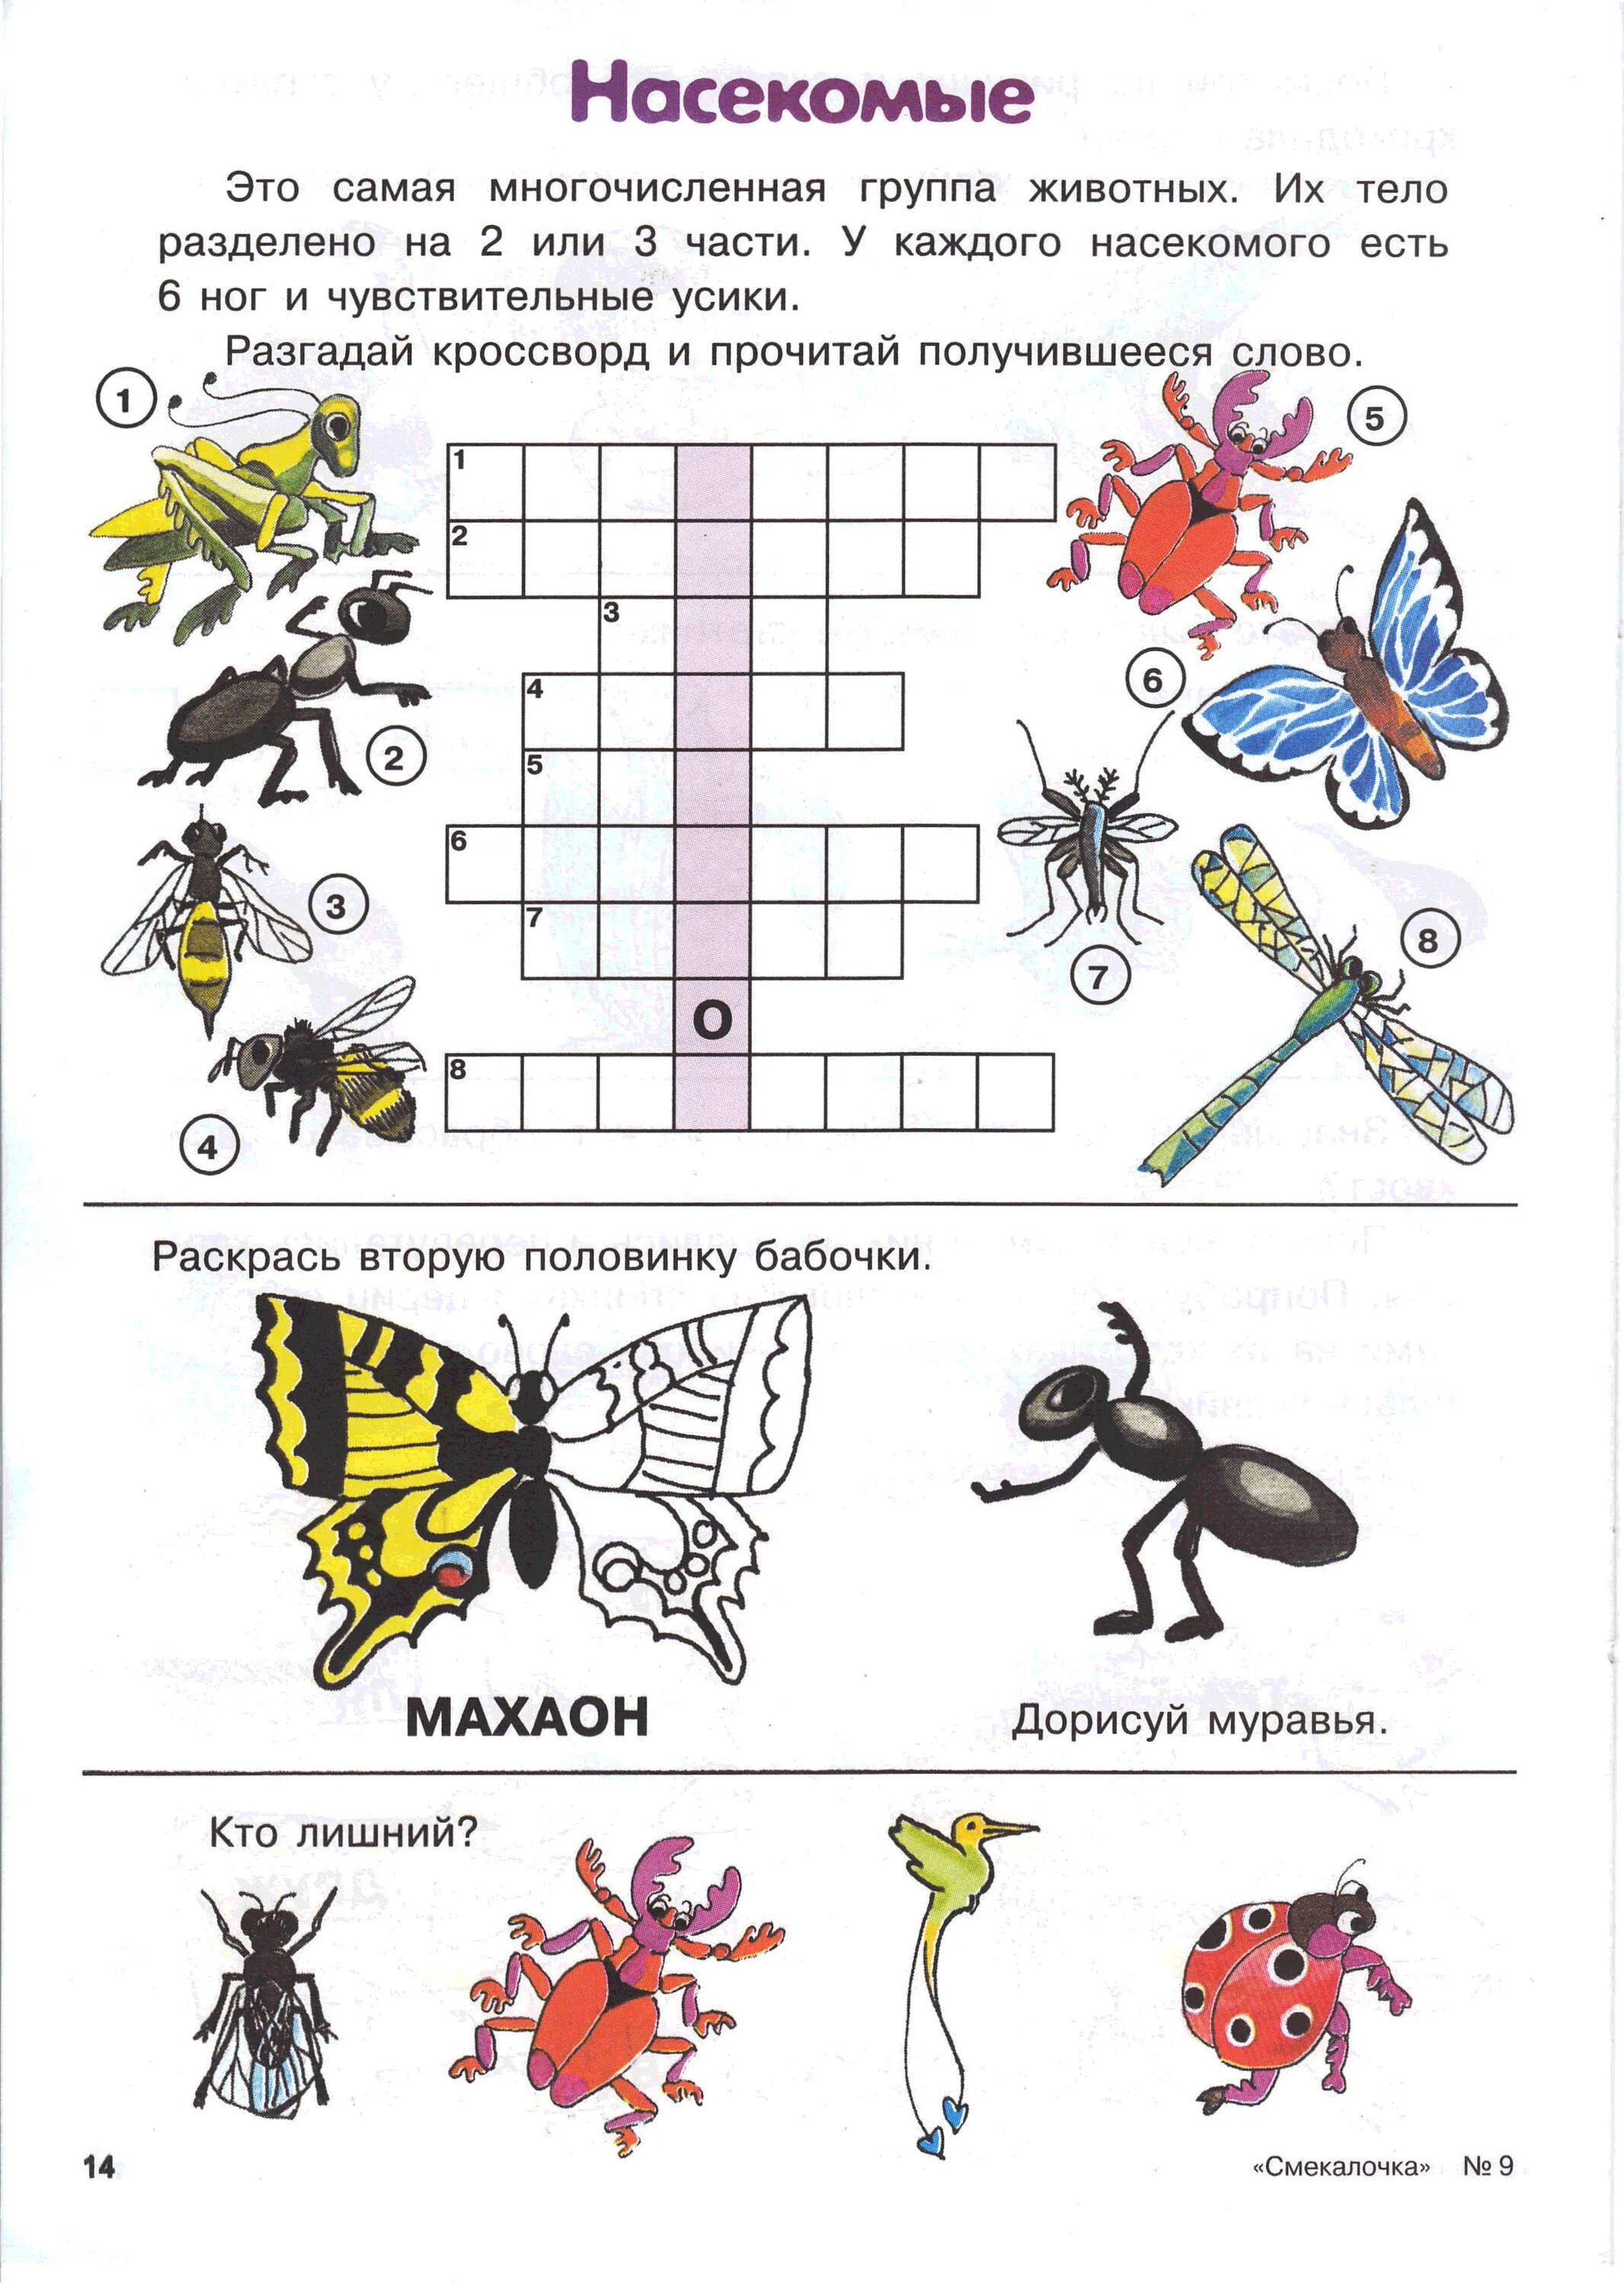 Насекомые задания для дошкольников. Задания на тему насекомые в подготовительной группе. Насекомые задания для детей 6-7 лет. Задания длядля дошкольников насекомые. Про насекомых детям 5 лет